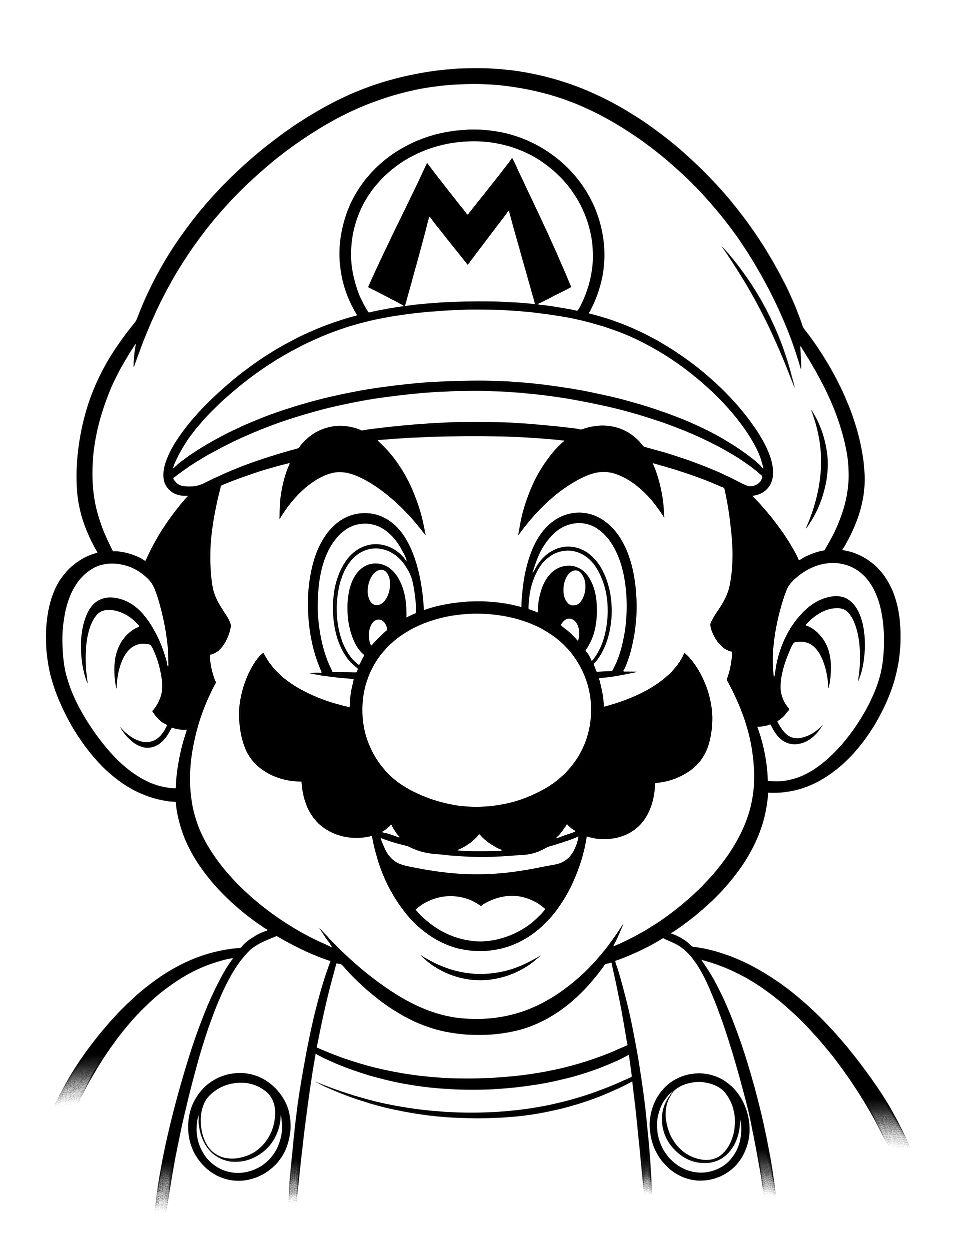 Mario-kleurplaten-kind